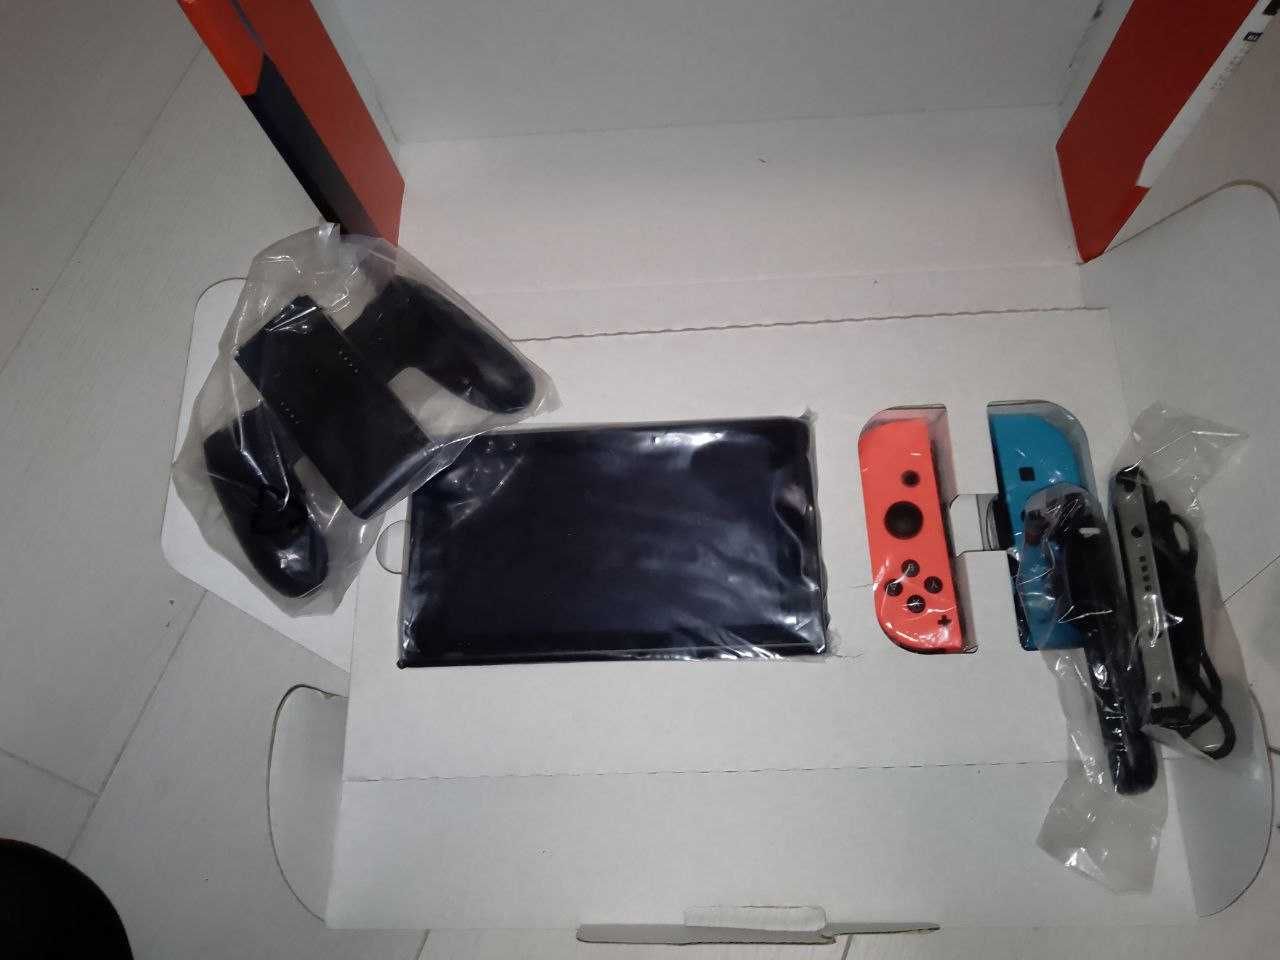 Ігрова консоль Nintendo Switch неоновий червоний / неоновий синій